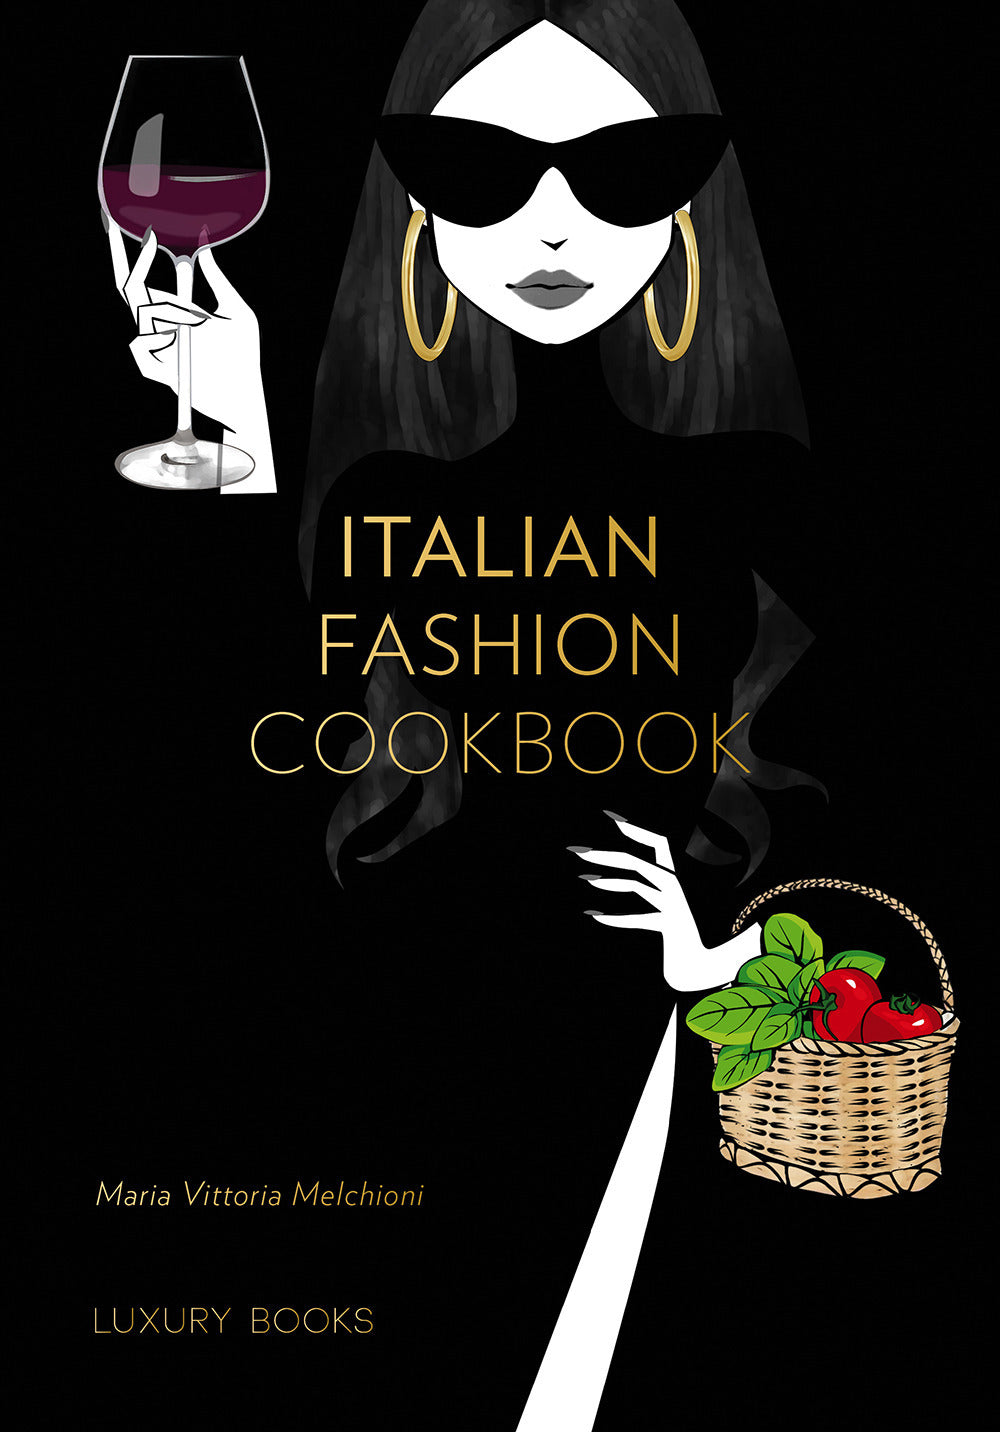 Italian fashion cookbook.